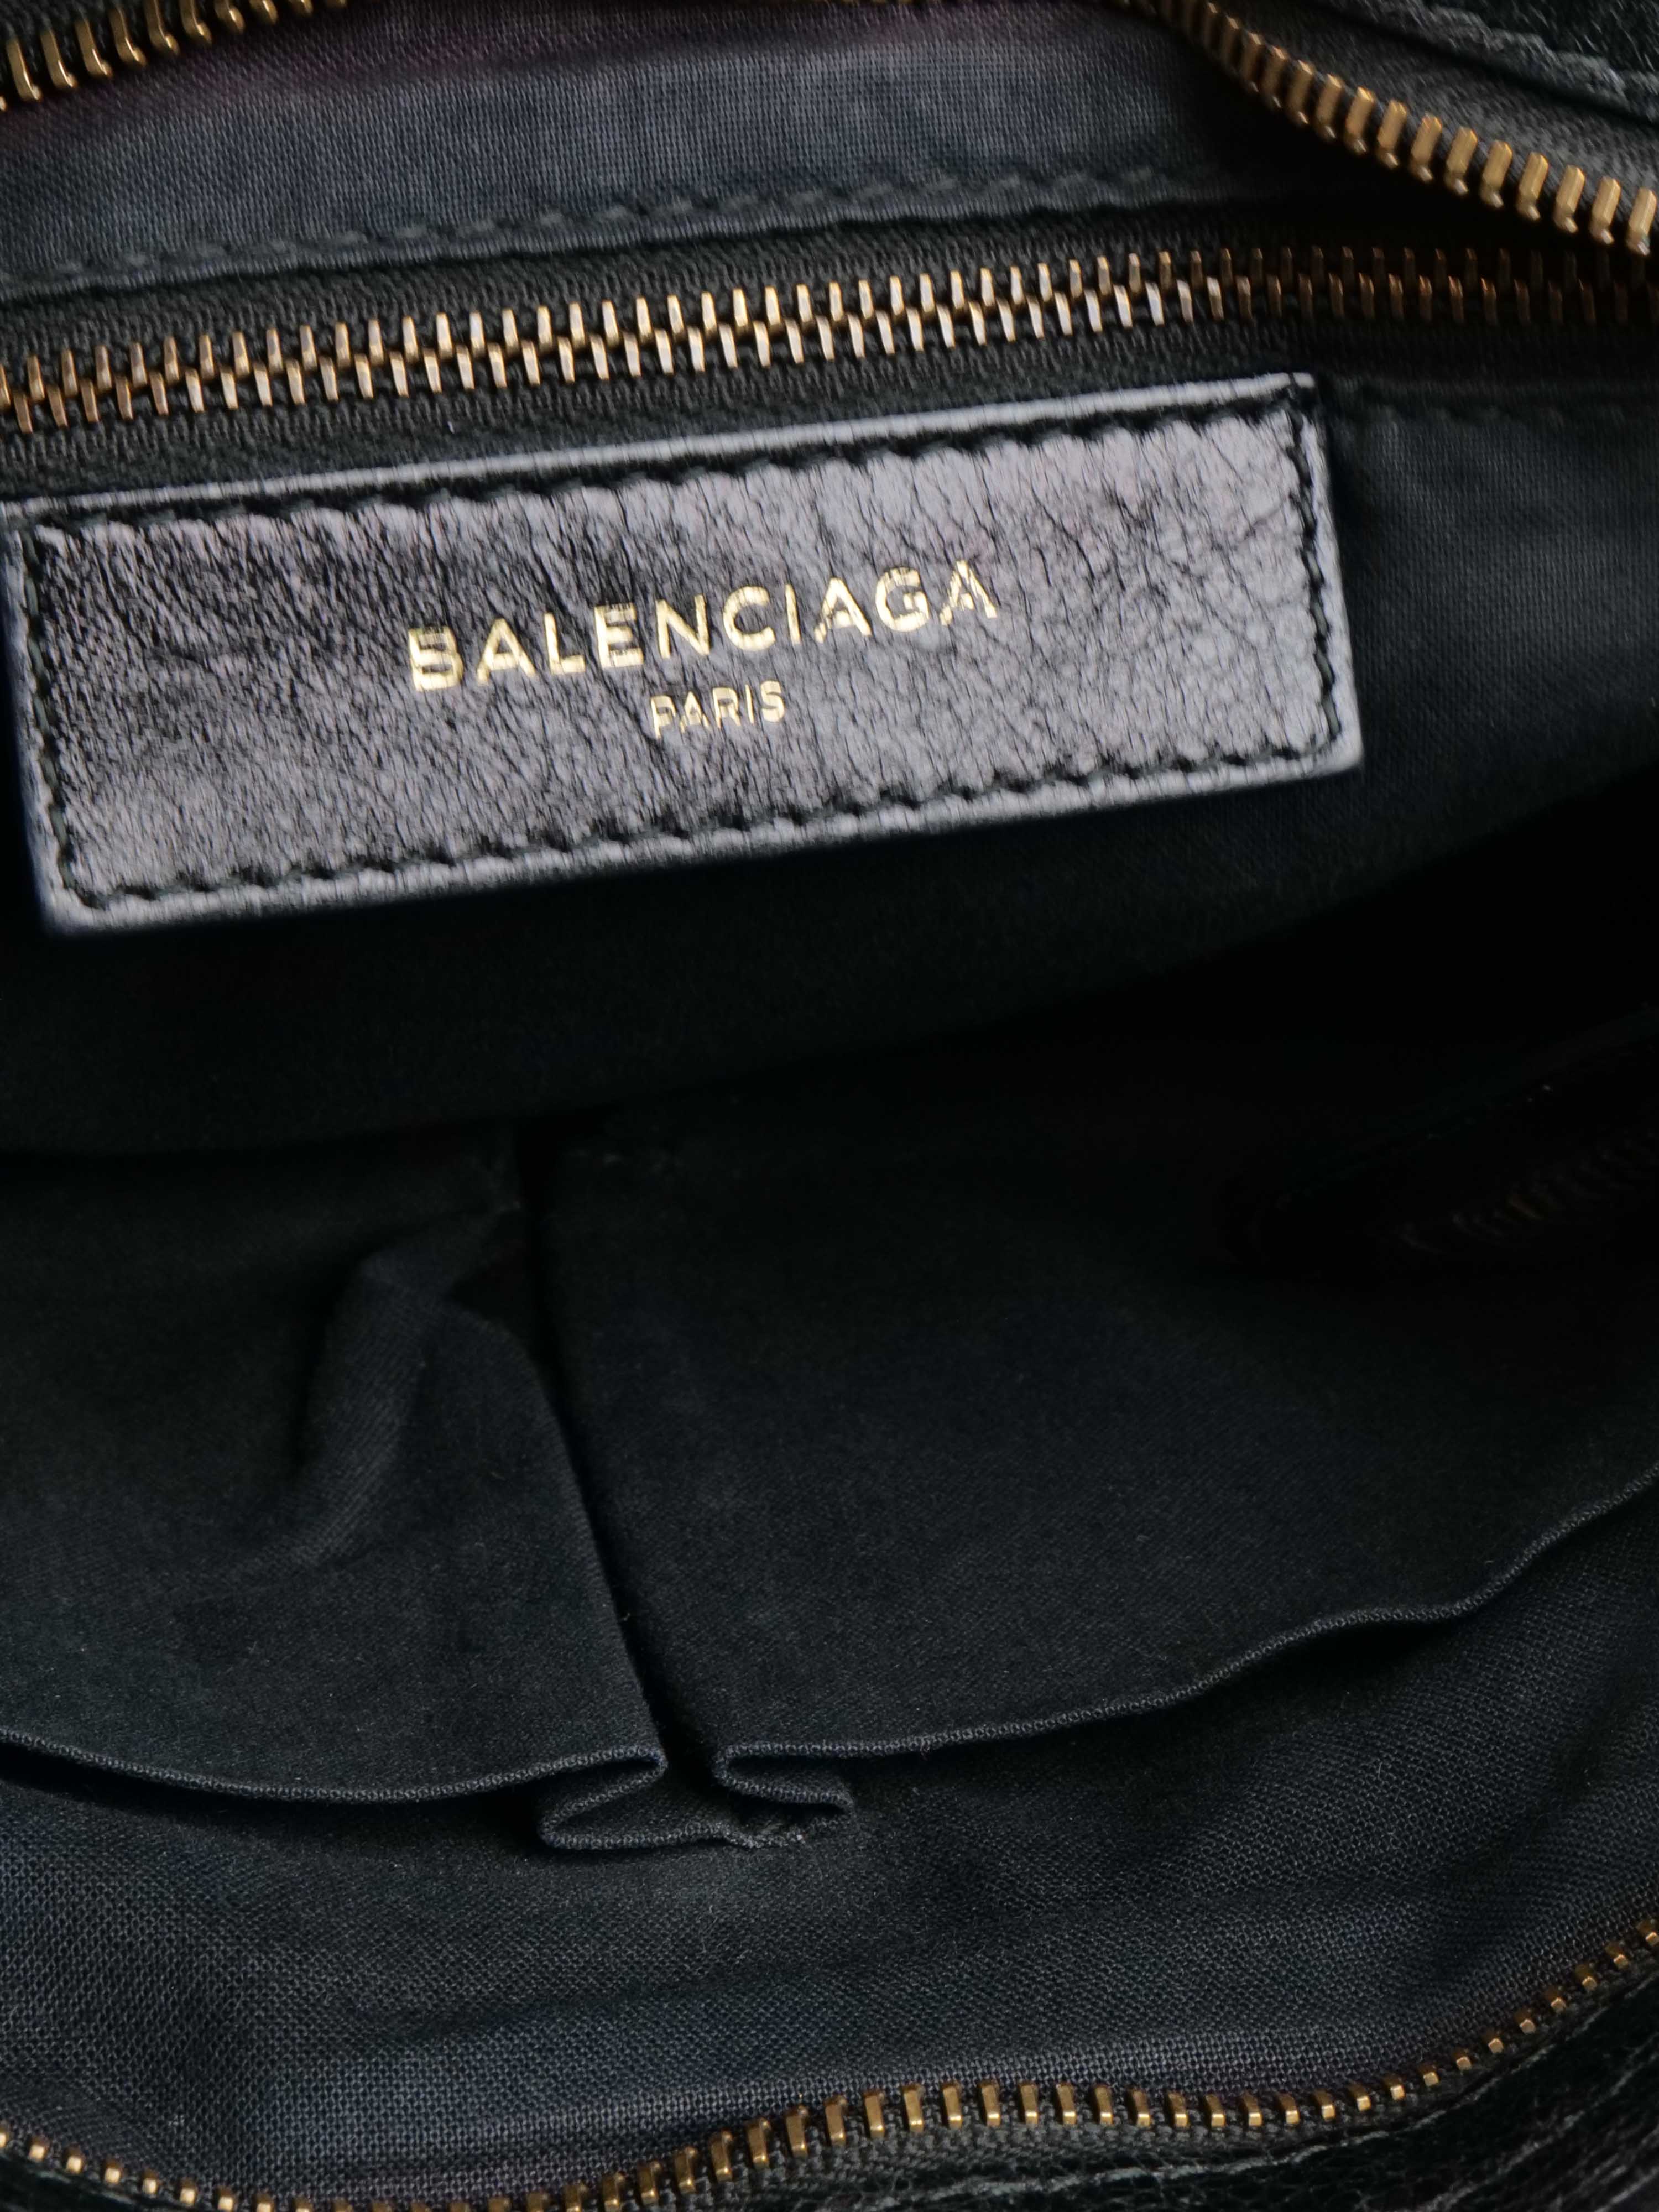 Balenciaga Small Black City Bag.